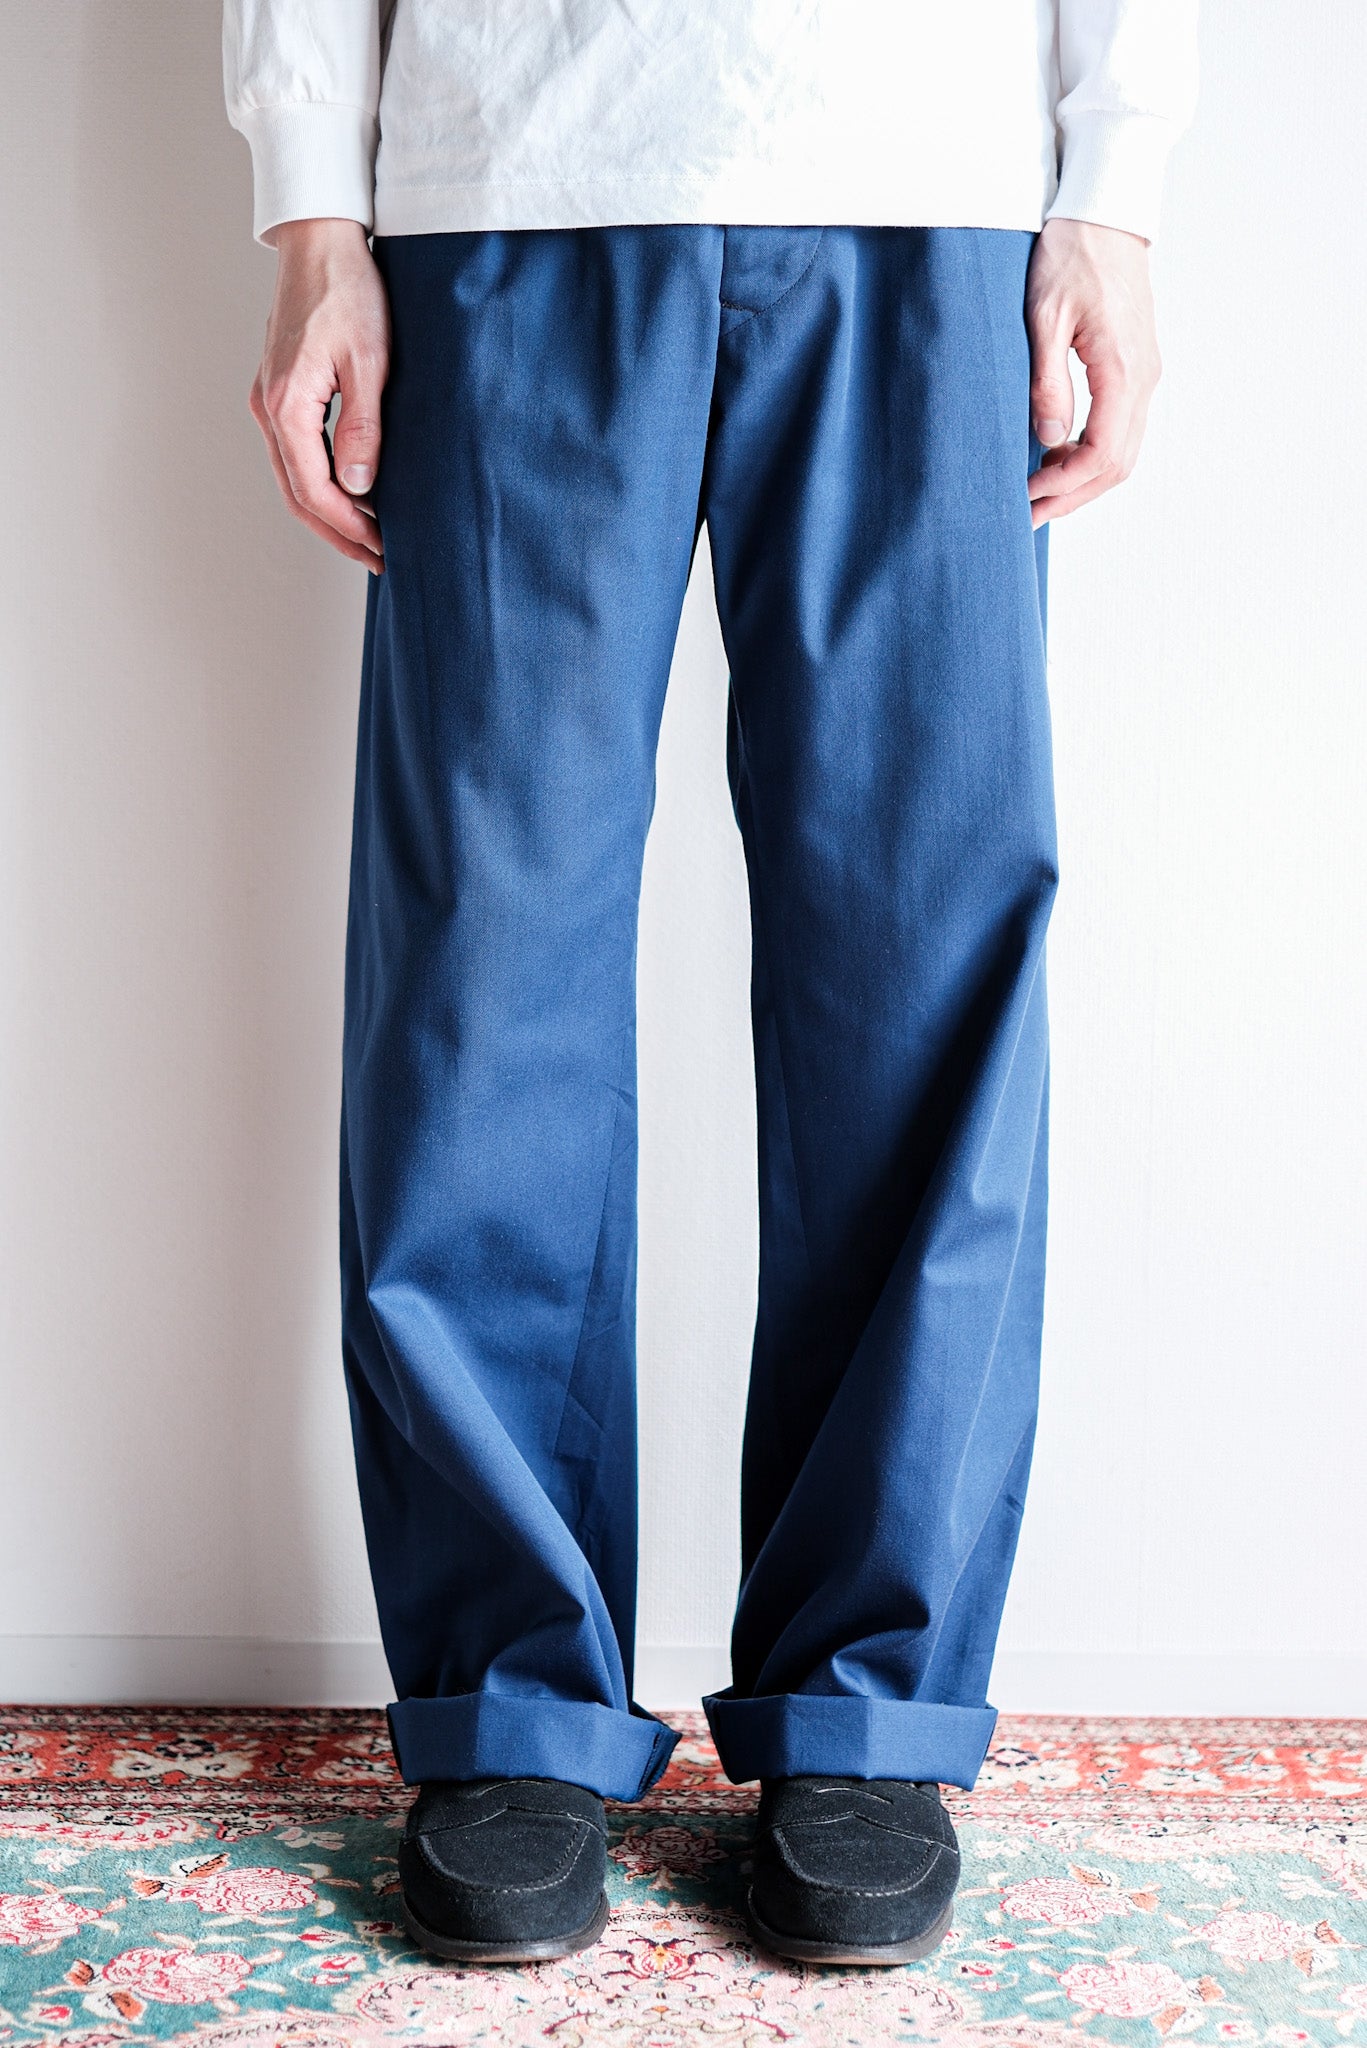 [~ 40's] British Vintage Blue Cotton Trousers "CC41" "Dead Stock"